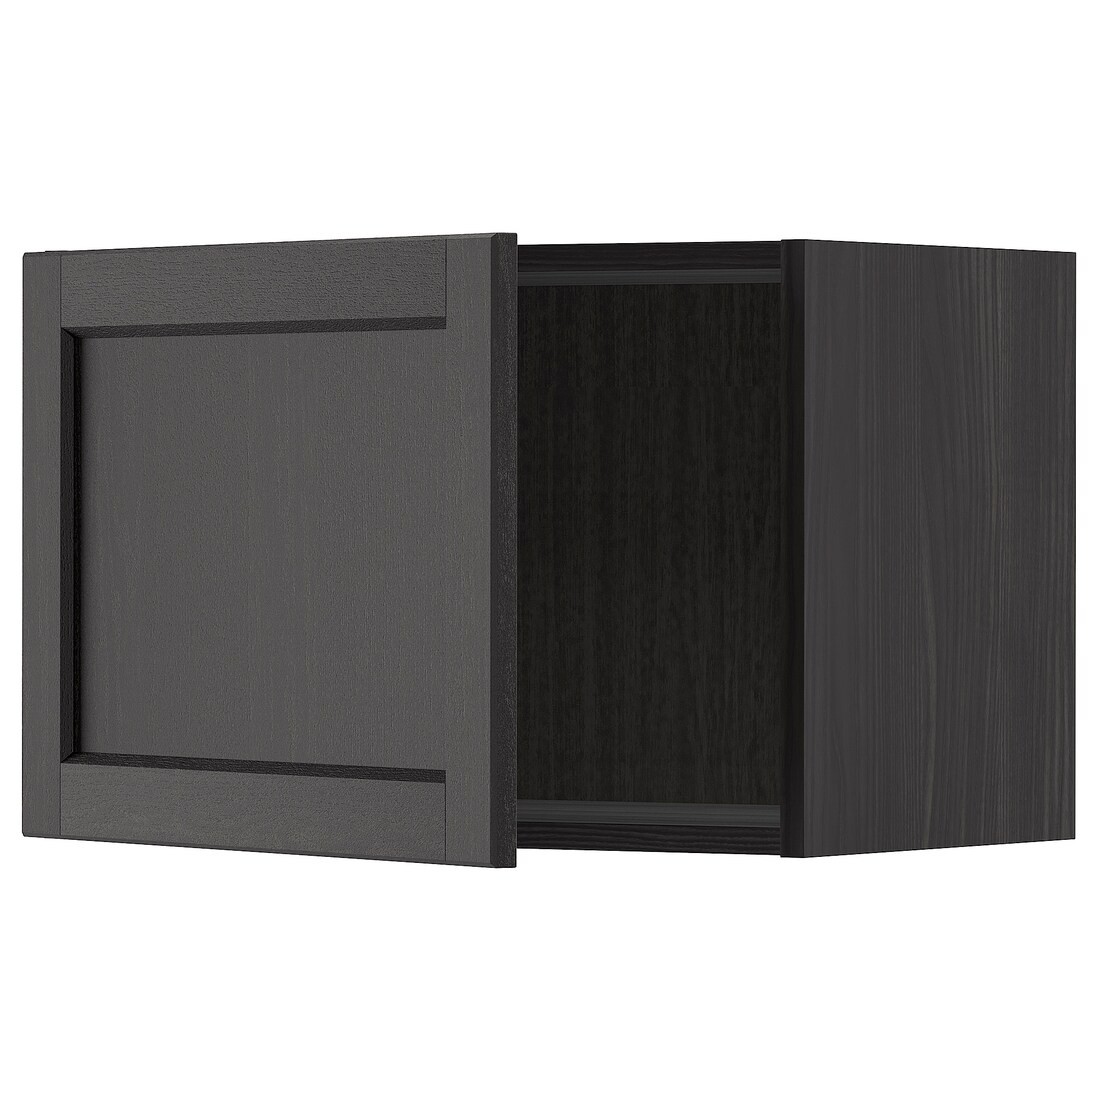 IKEA METOD МЕТОД Настенный шкаф, черный / Lerhyttan черная морилка, 60x40 см 99459122 994.591.22